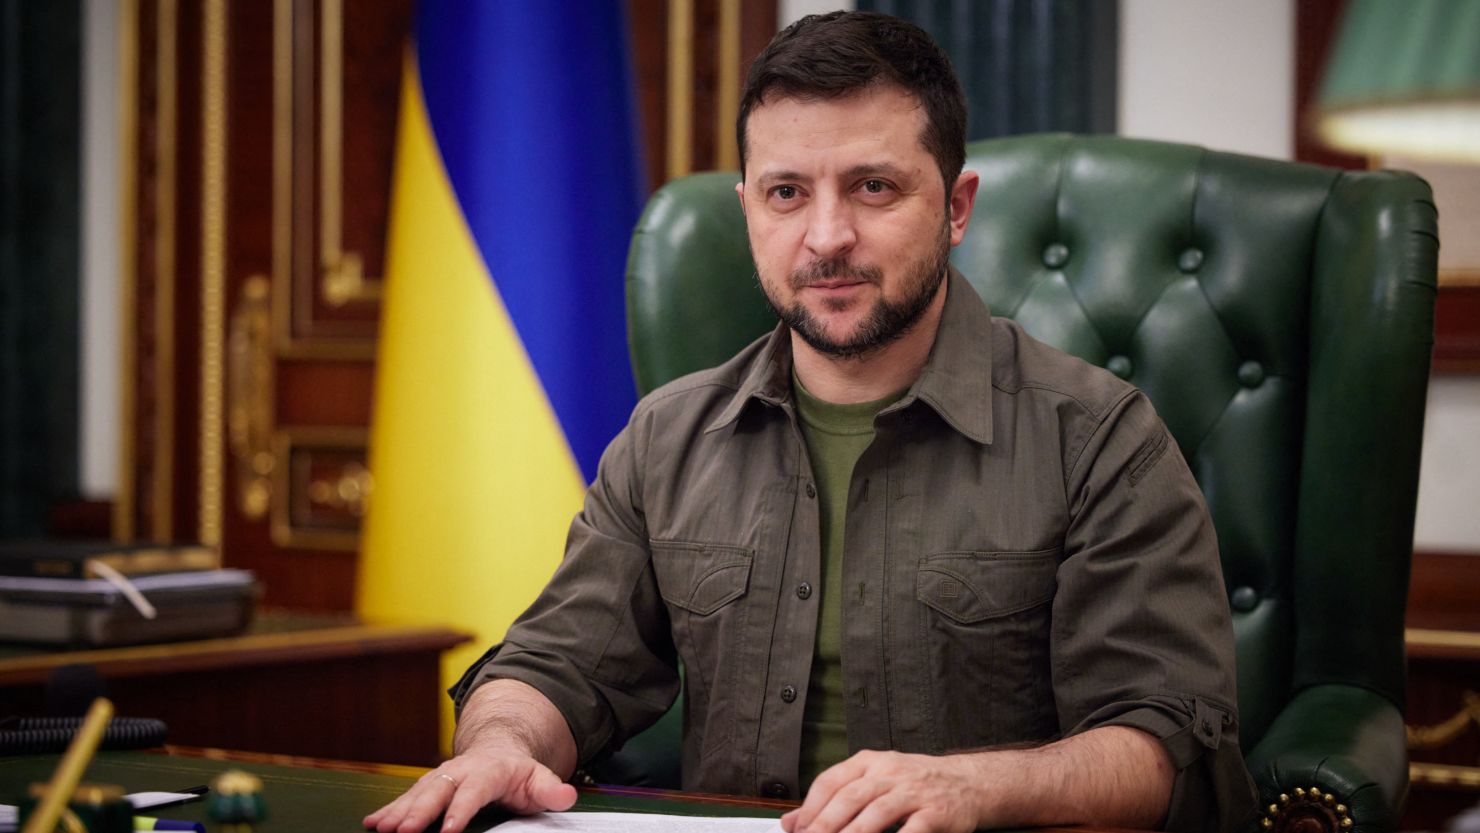 PRESIDENT OF UKRAINE ZELENSKY SELLS RIGHTS TO ALL ENTERPRISES IN